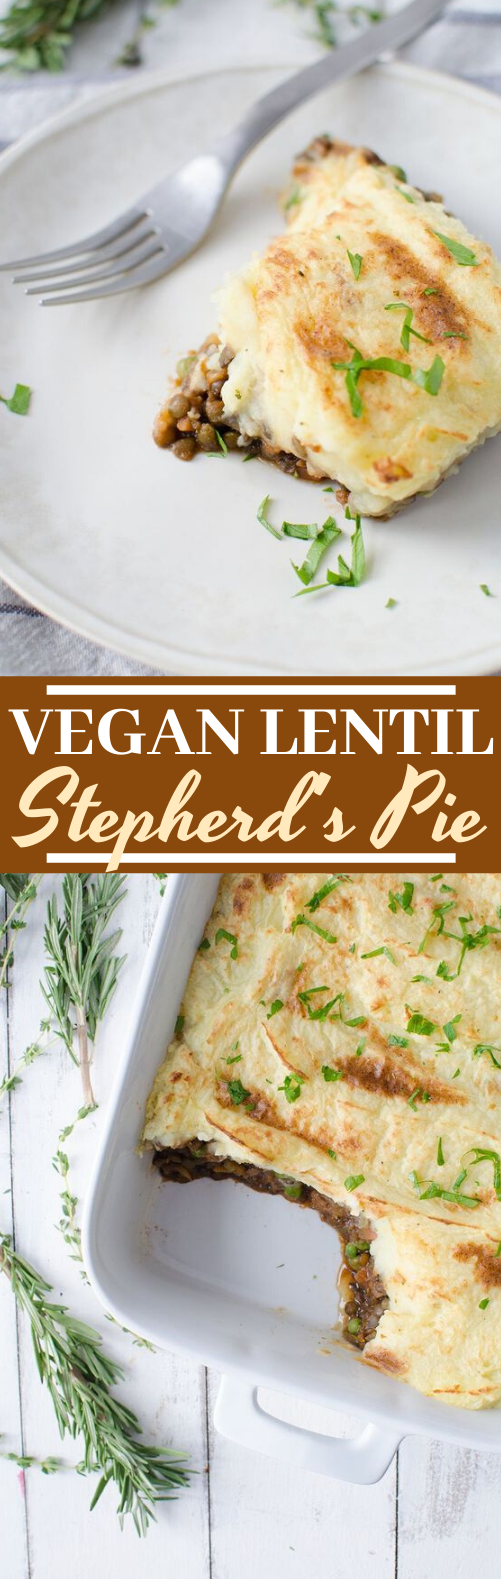 Vegan Lentil Shepherd's Pie #vegan #dinner #meatless #comfortfood #christmas